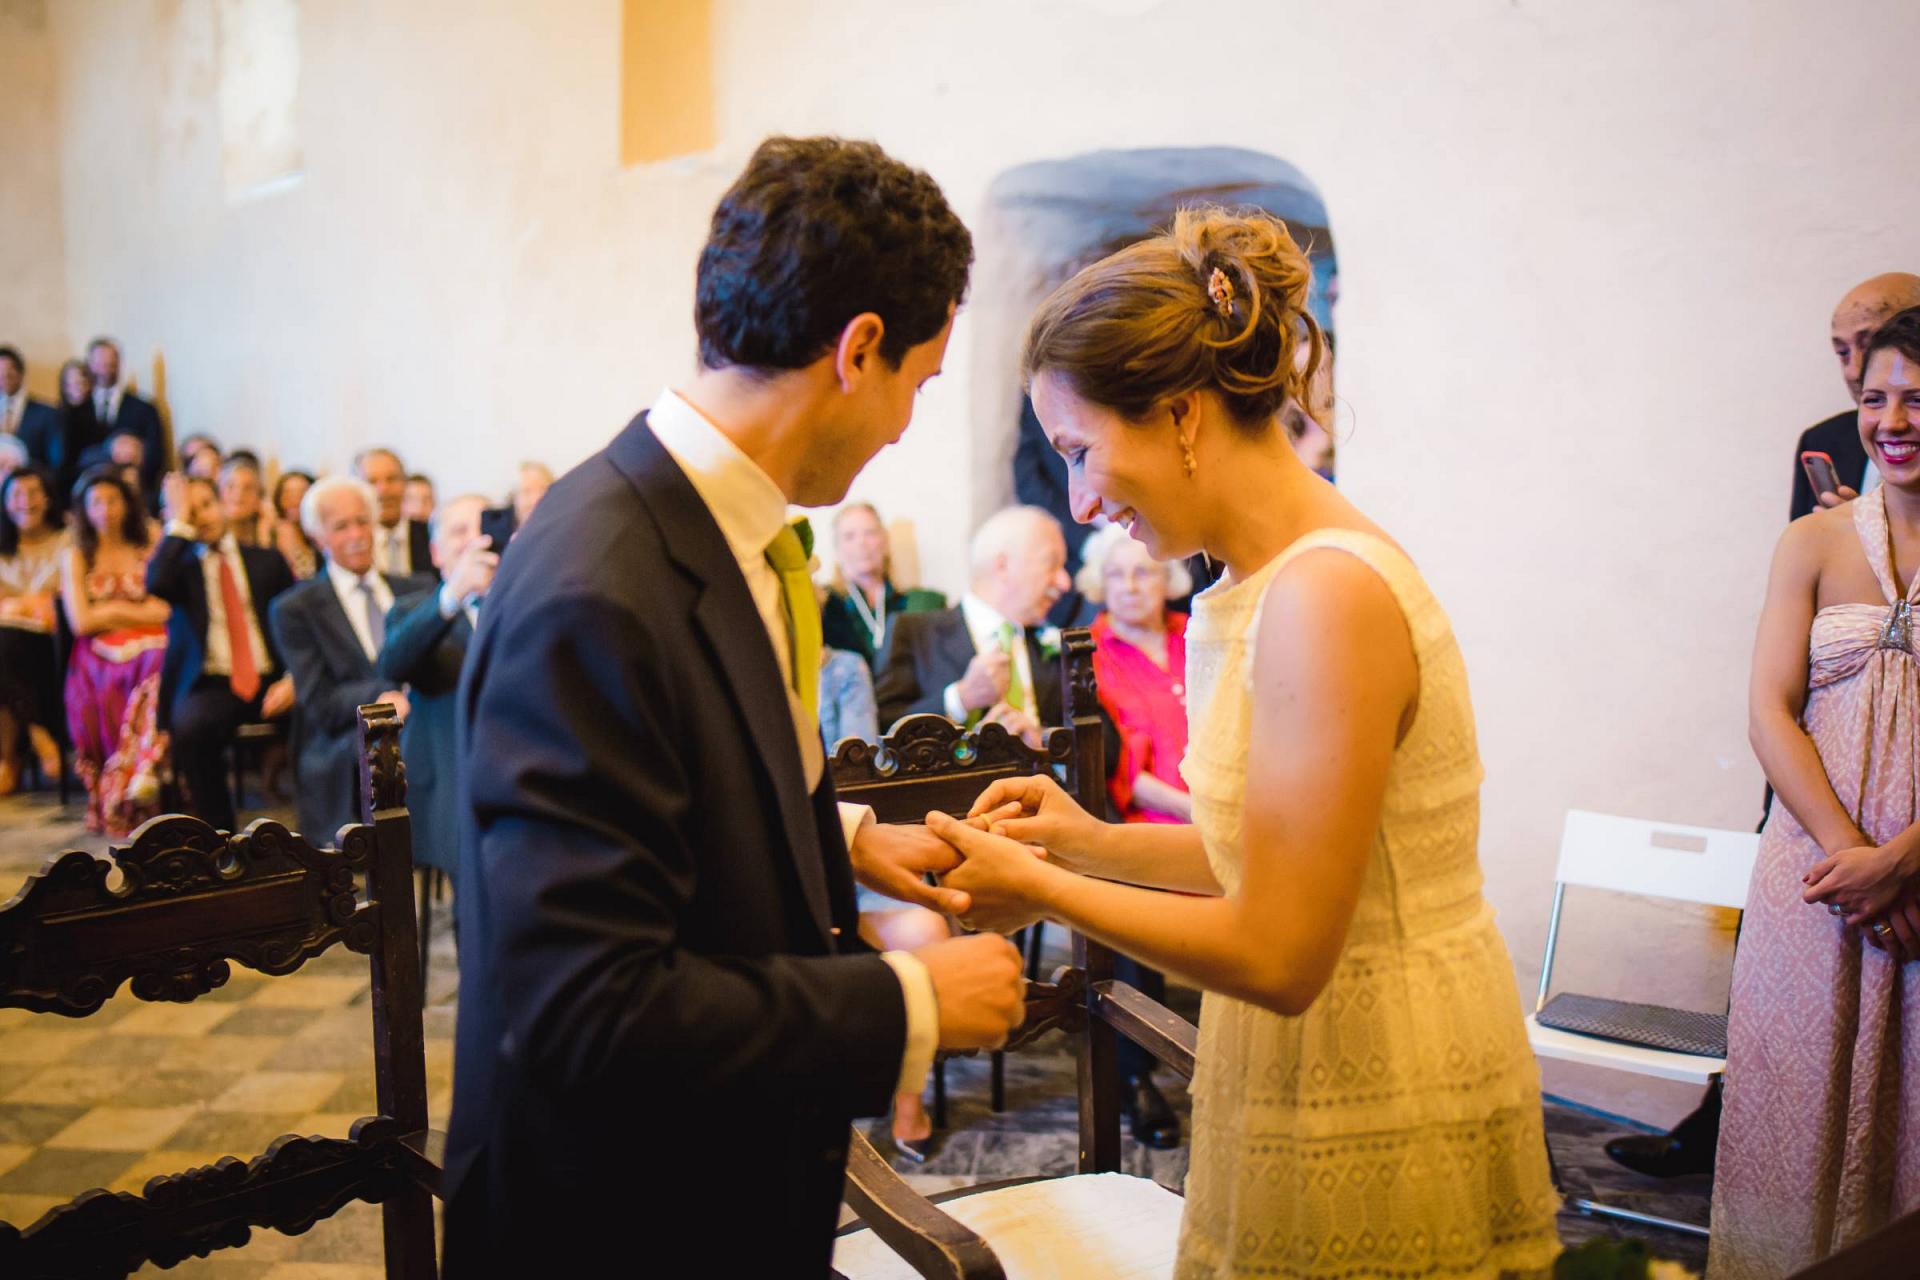 Giacomo&Anna Matrimonio Wedding Italia Italy Liguria